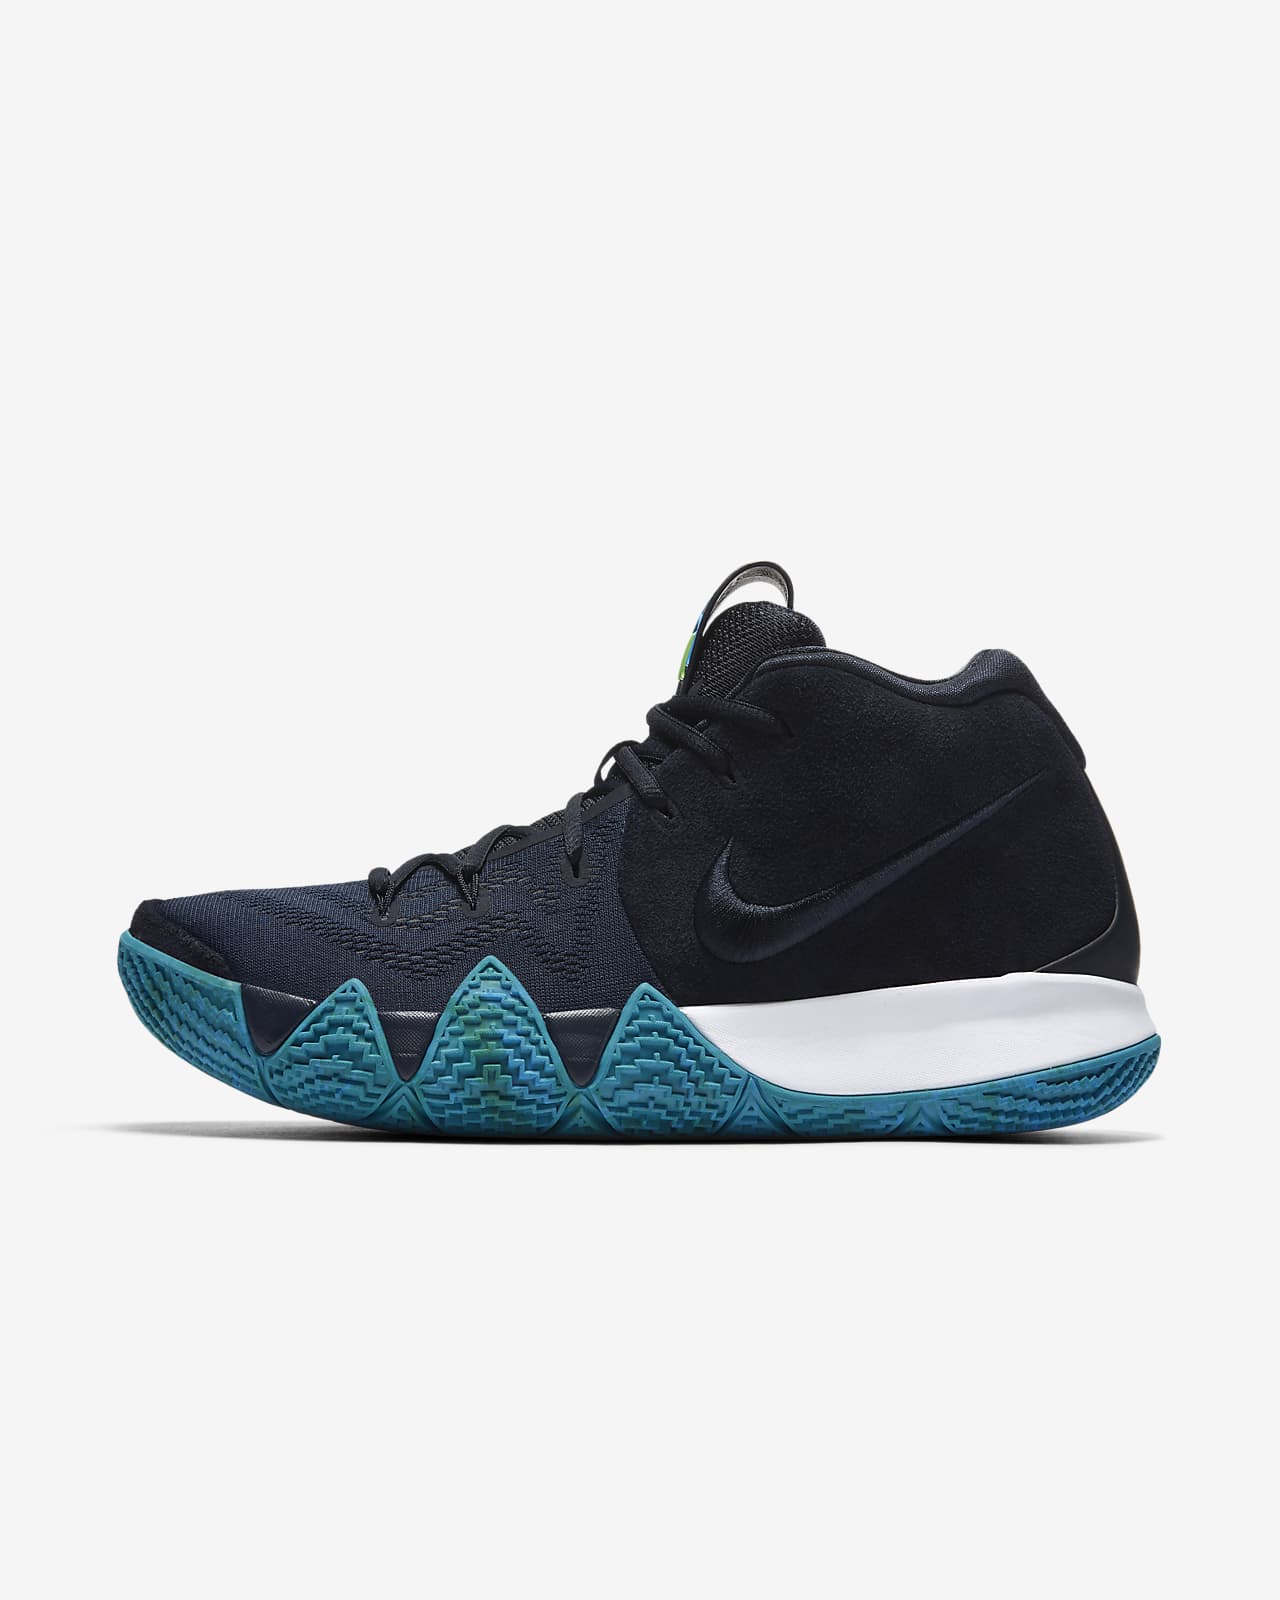 Kyrie 4 Basketball Shoe. Nike.com